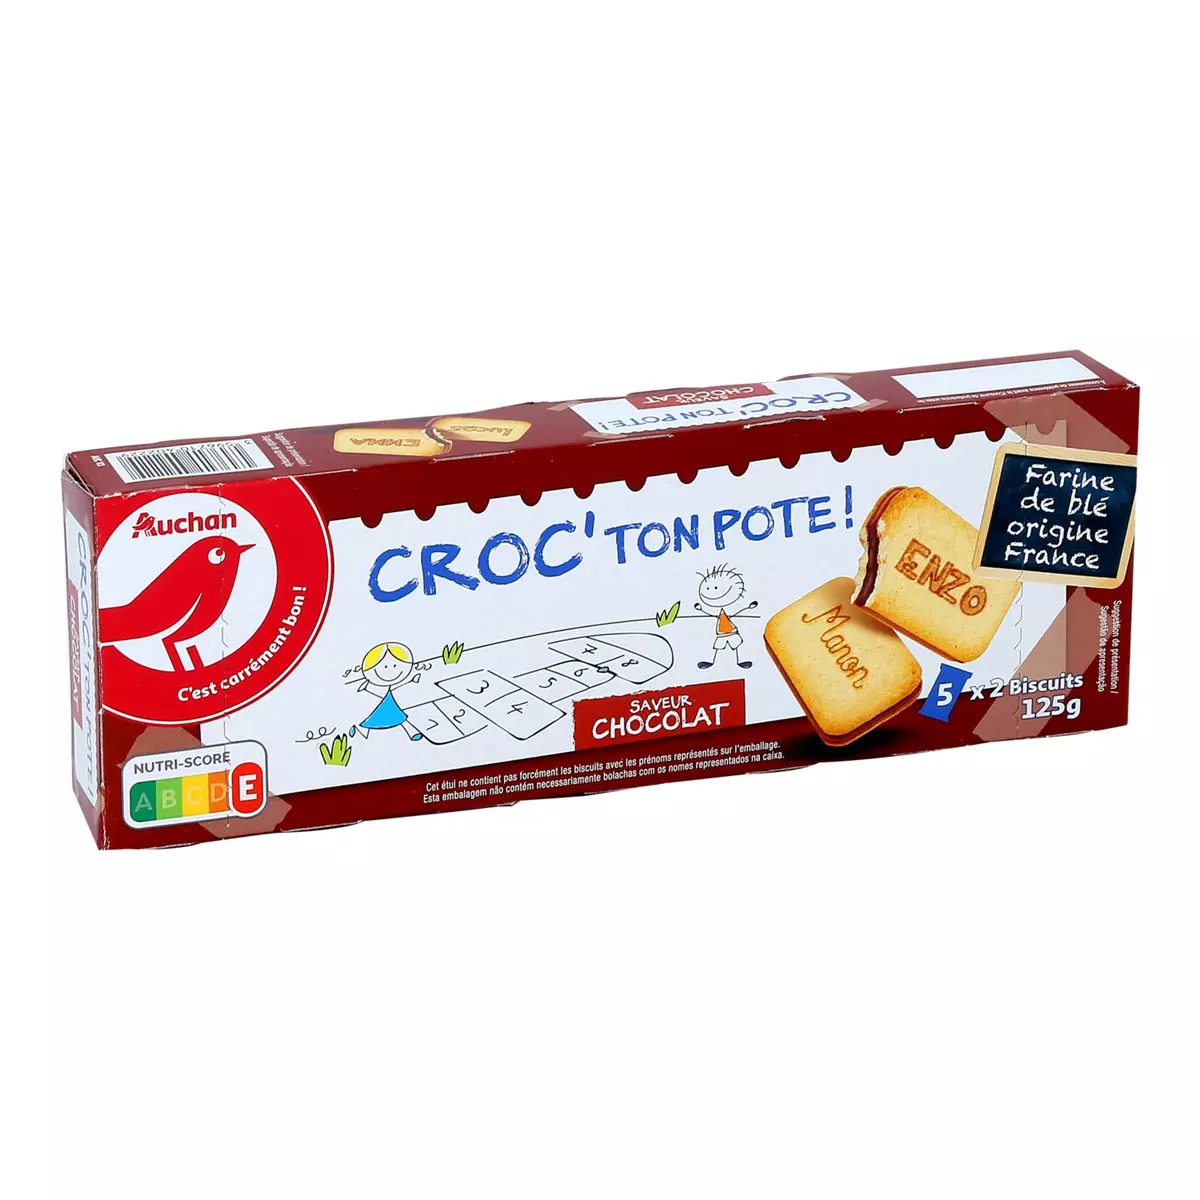 AUCHAN Croc' ton pote minis goûters fourrés parfum chocolat, sachets fraîcheur 5x2 biscuits 125g